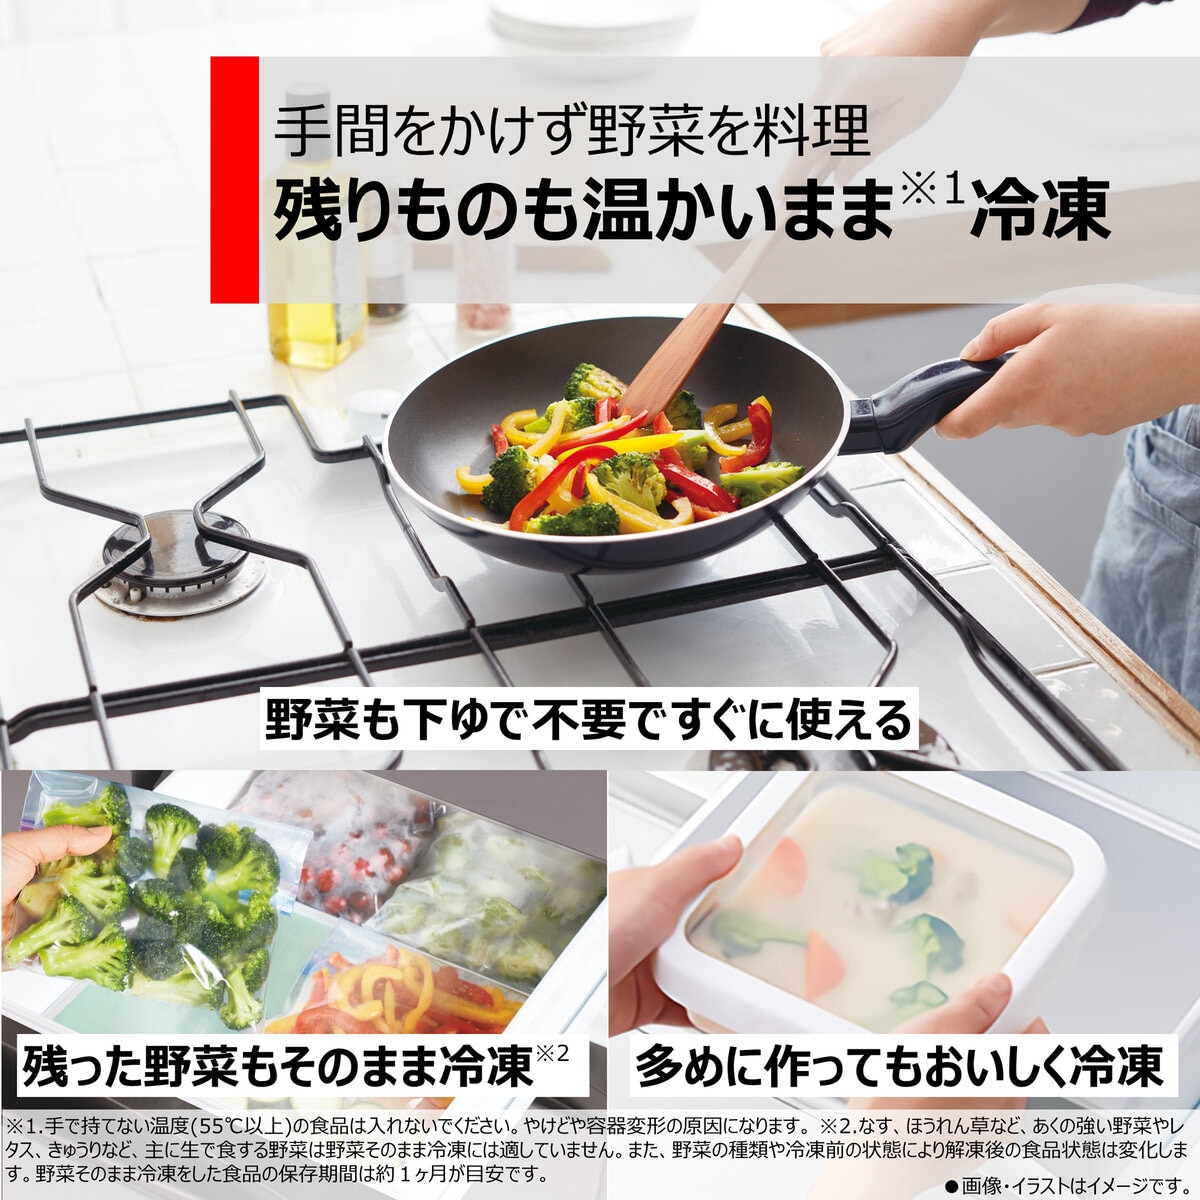 お得得価TOSHIBA/東芝 601L 6ドア冷蔵冷凍庫 フレンチドア GR-J610FV 直接引取り歓迎(横浜市) digjunkmarket 500リットル以上